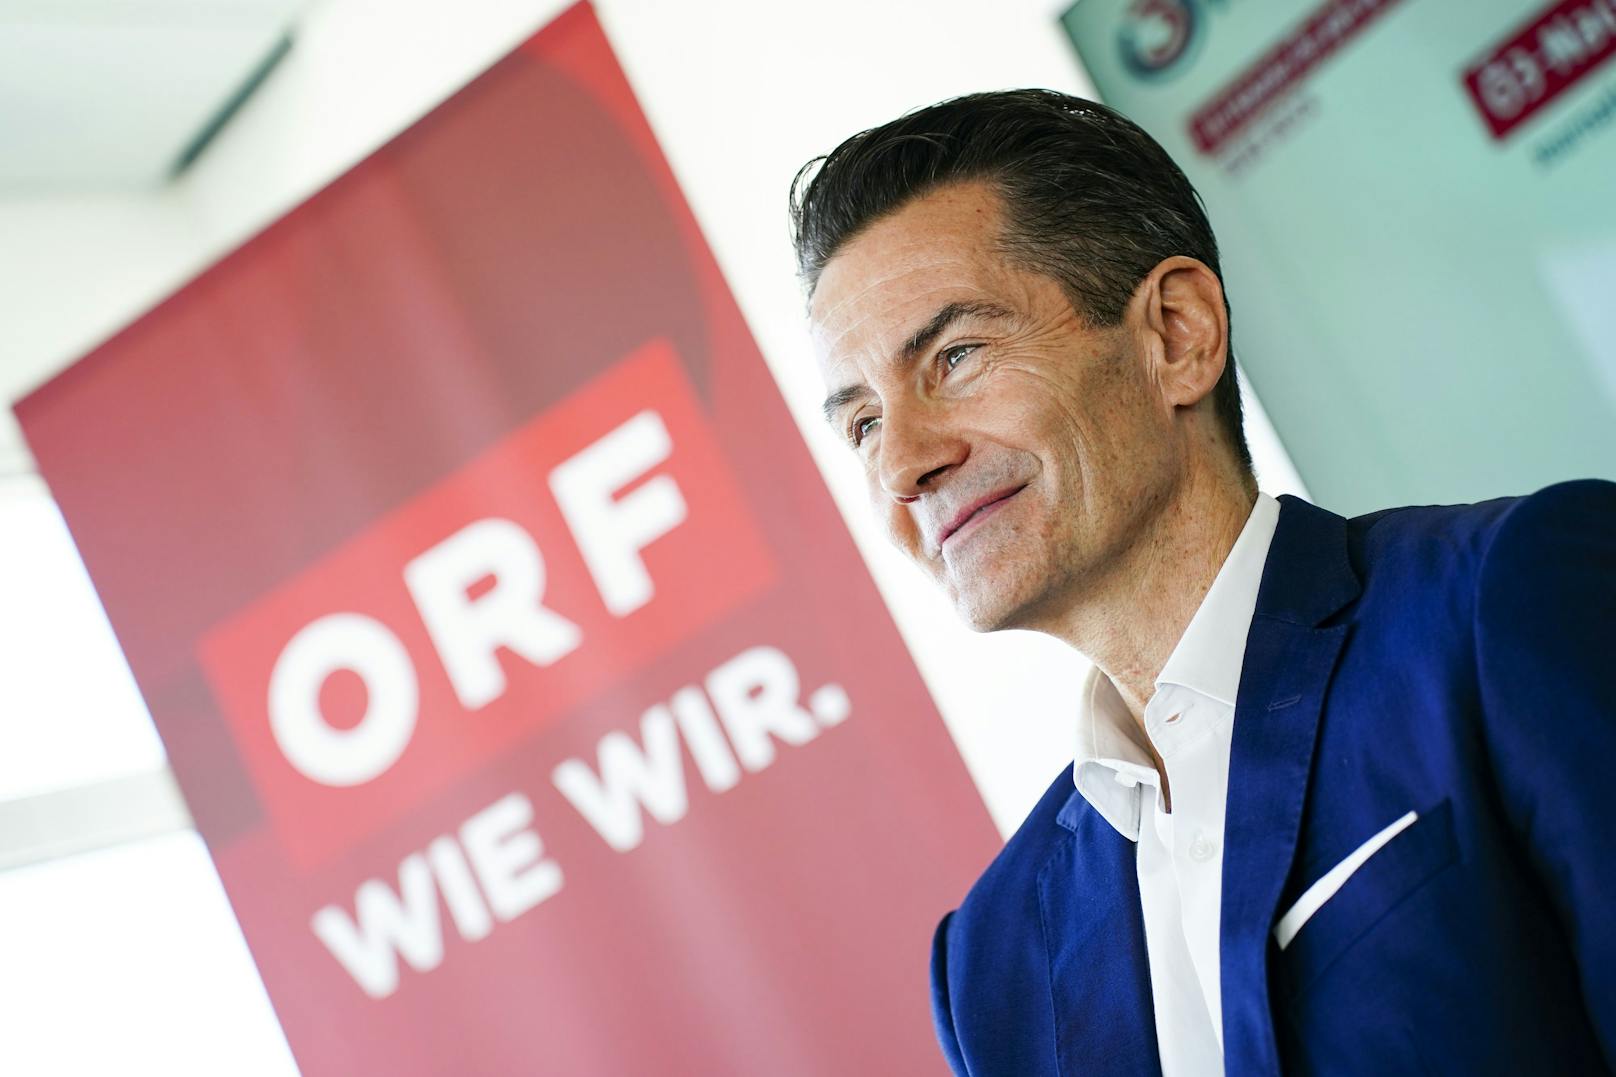 Freut sich über Haushaltsabgabe: ORF-Generaldirektor Roland Weißmann